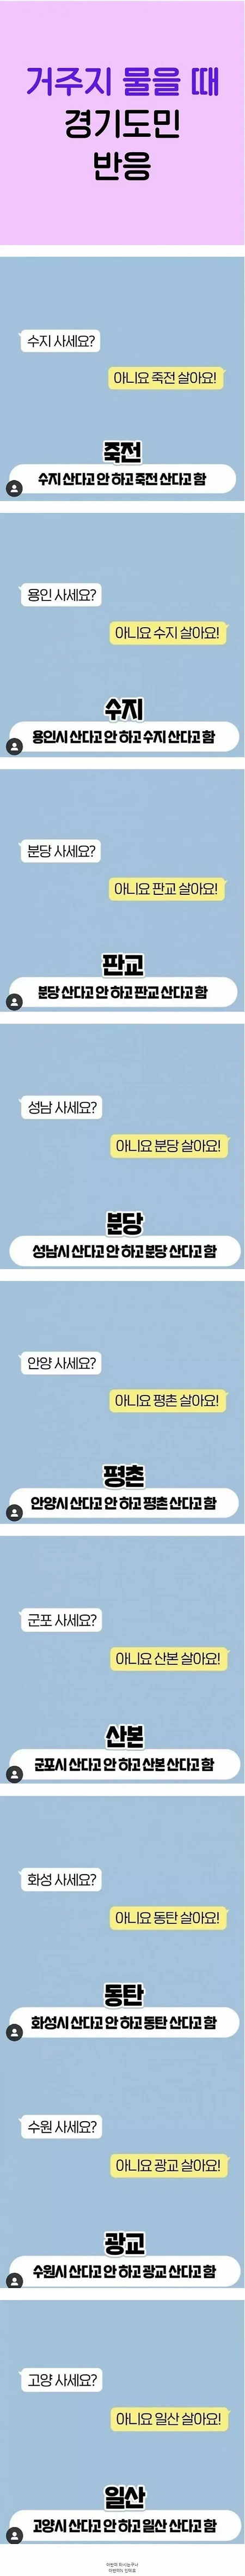 경기도 신도시 사는 사람들의 특징(feat. 집값)